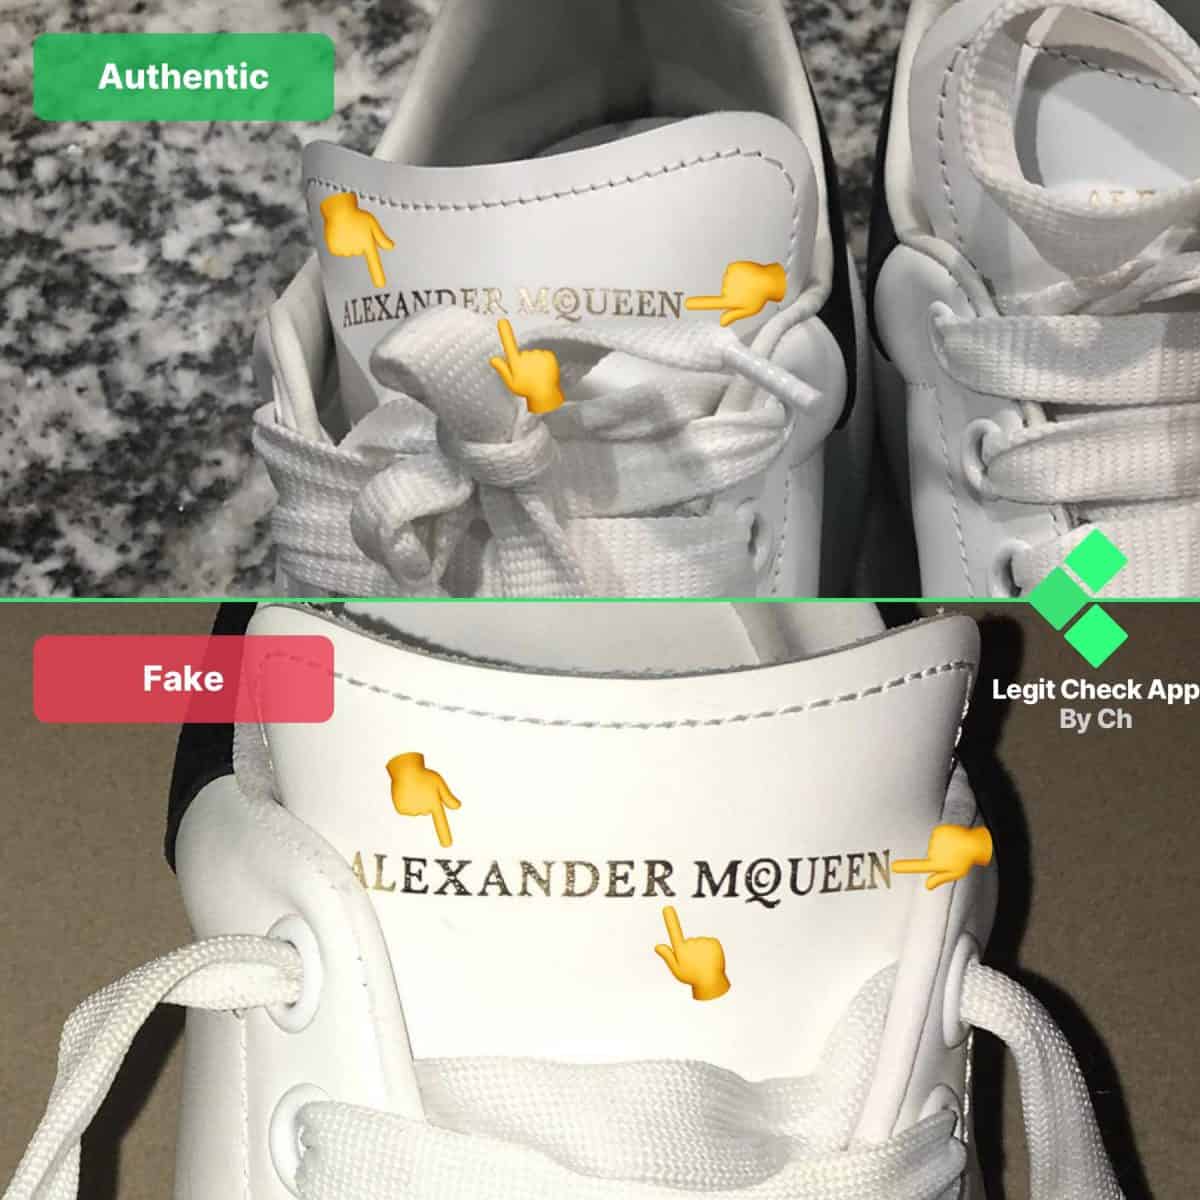 How To Spot Counterfeit Alexander 